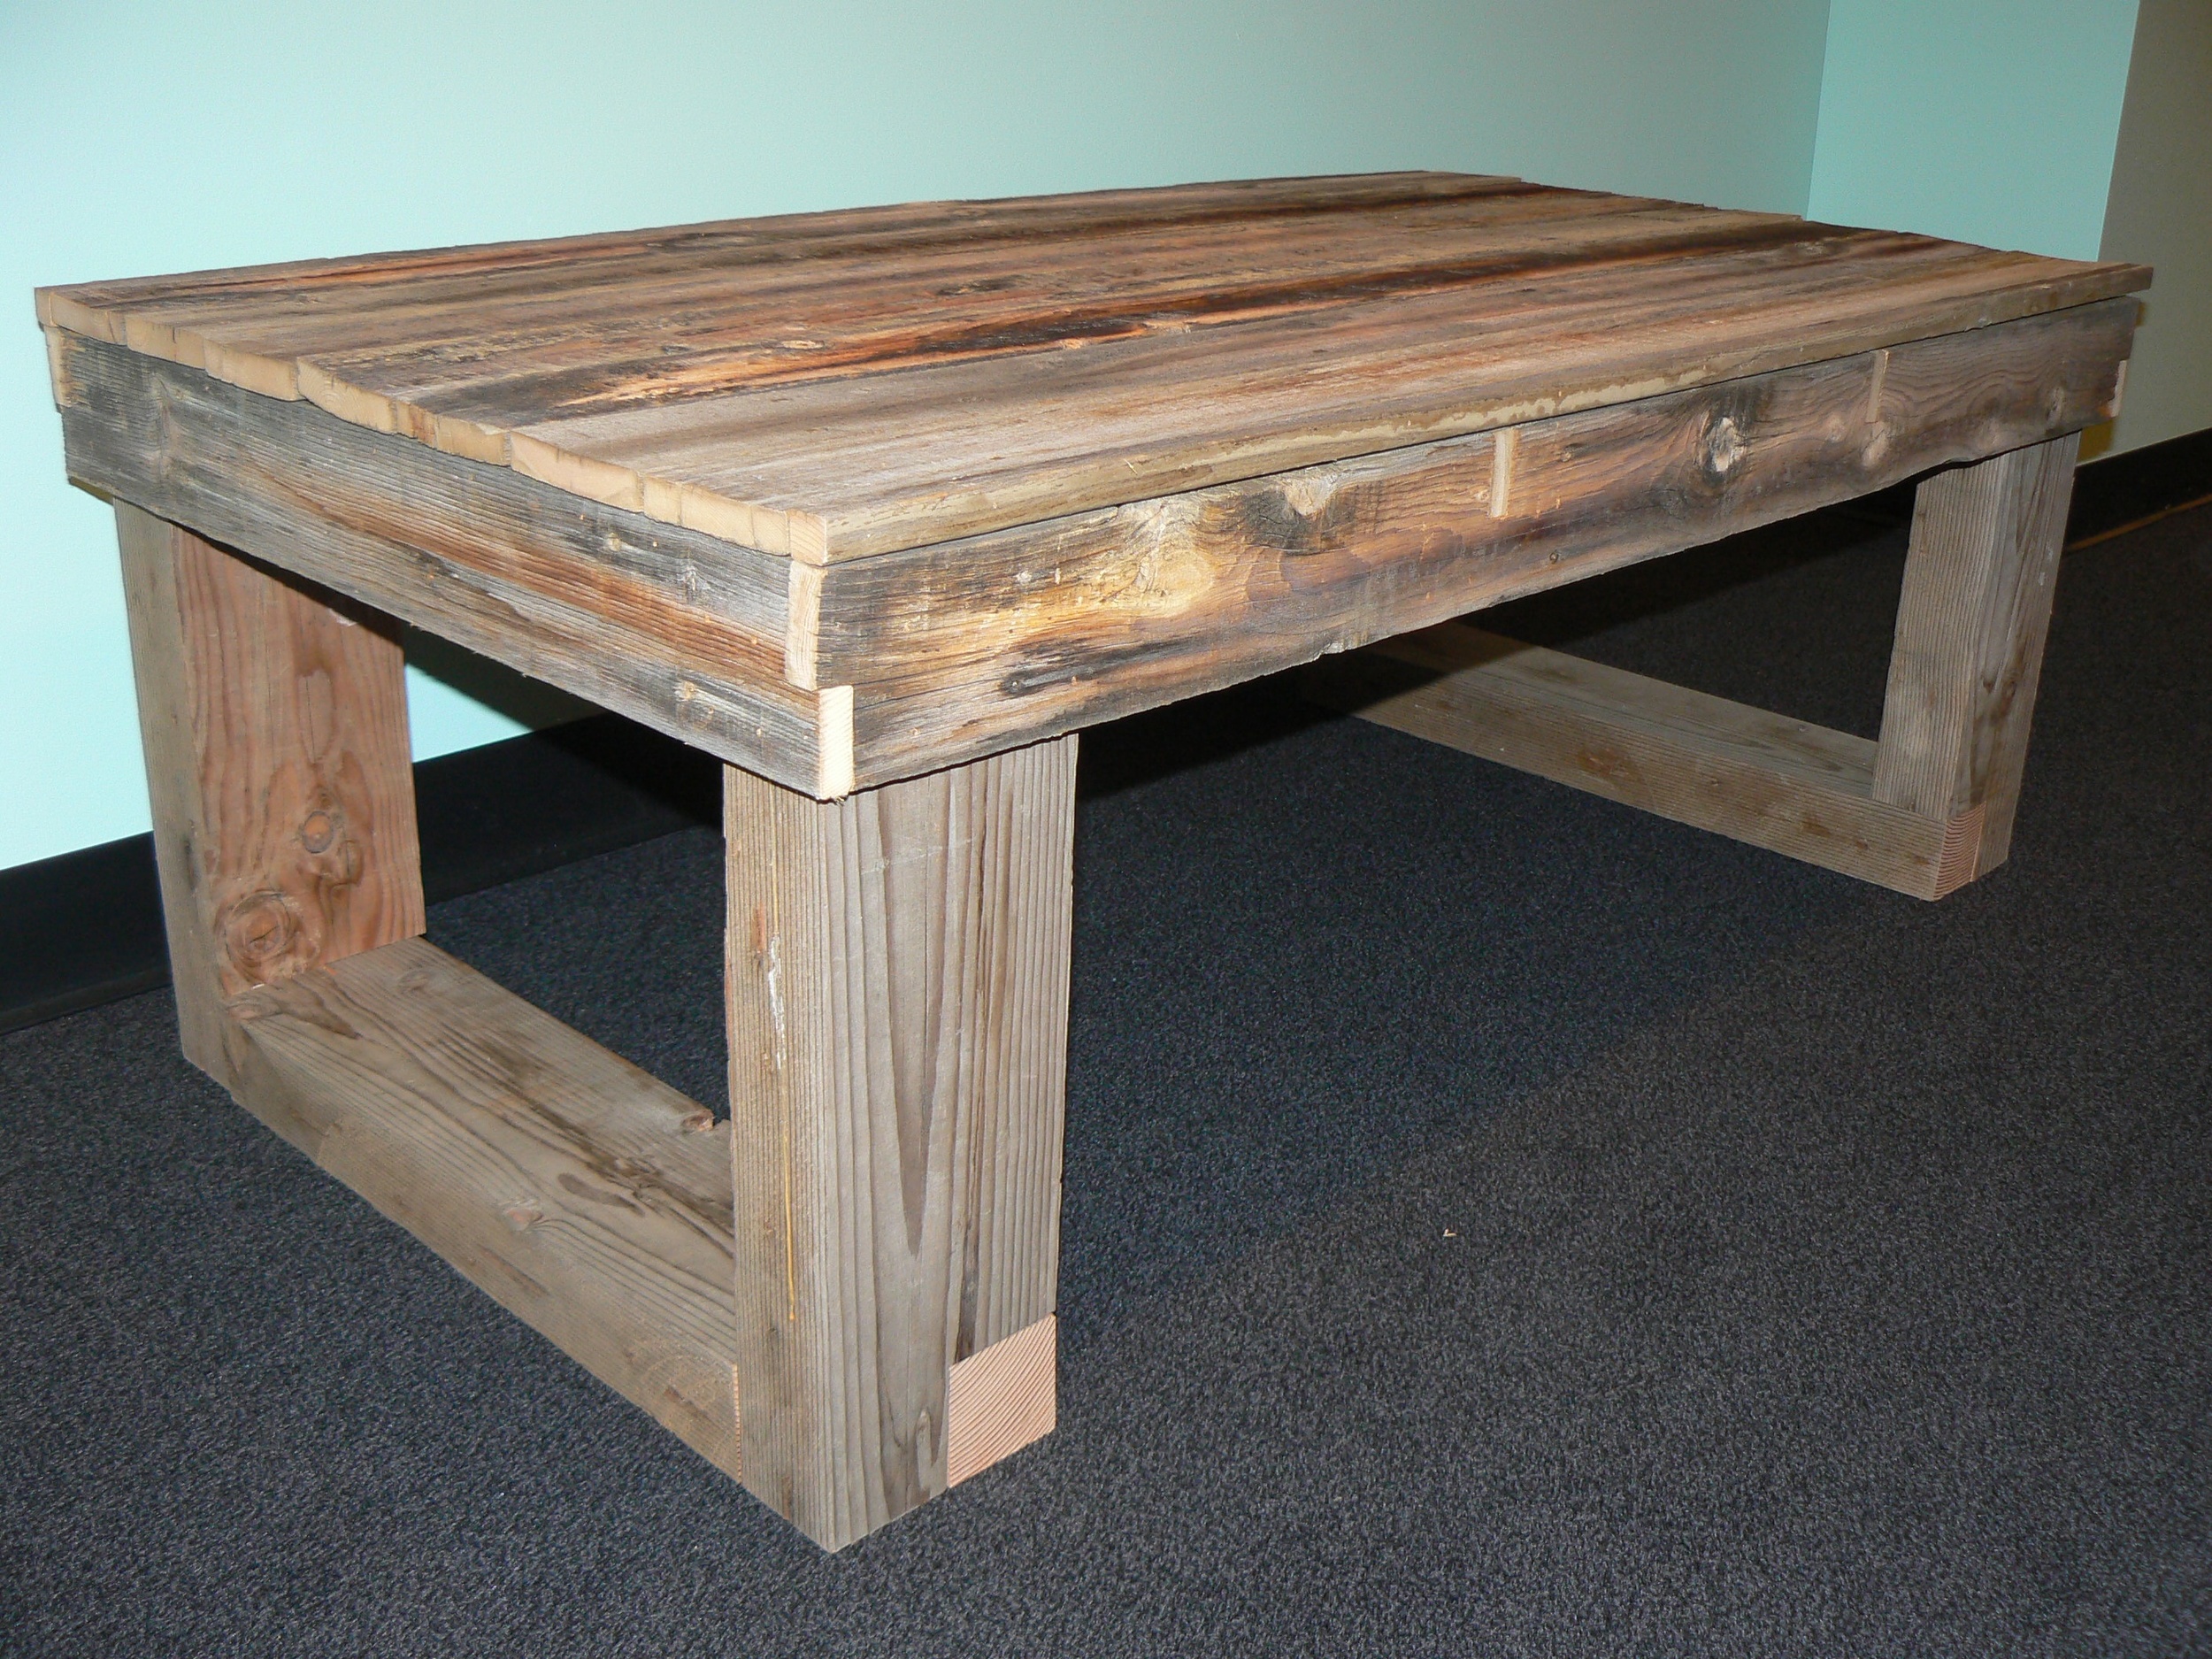 Reclaimed wood table 3.jpg